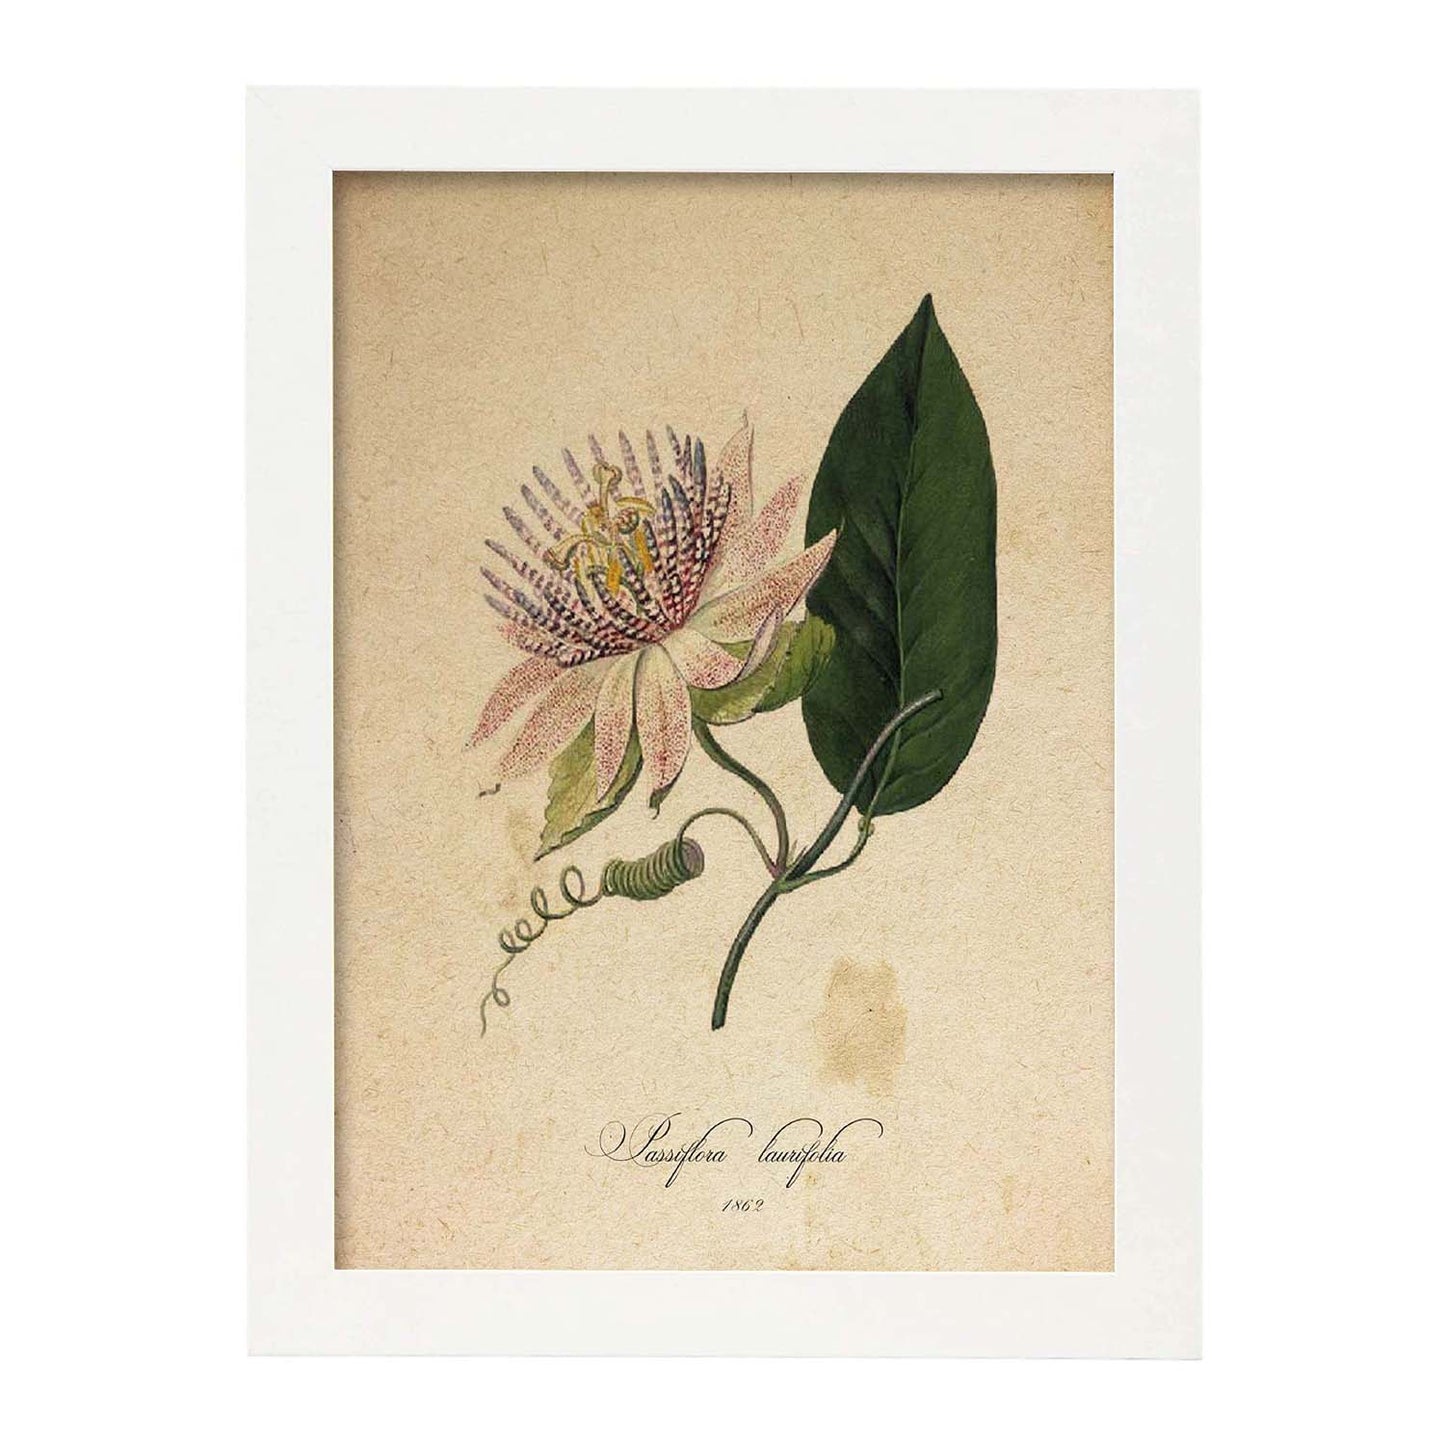 Poster de flores vintage. Lámina Passiflora con diseño vintage.-Artwork-Nacnic-A4-Marco Blanco-Nacnic Estudio SL